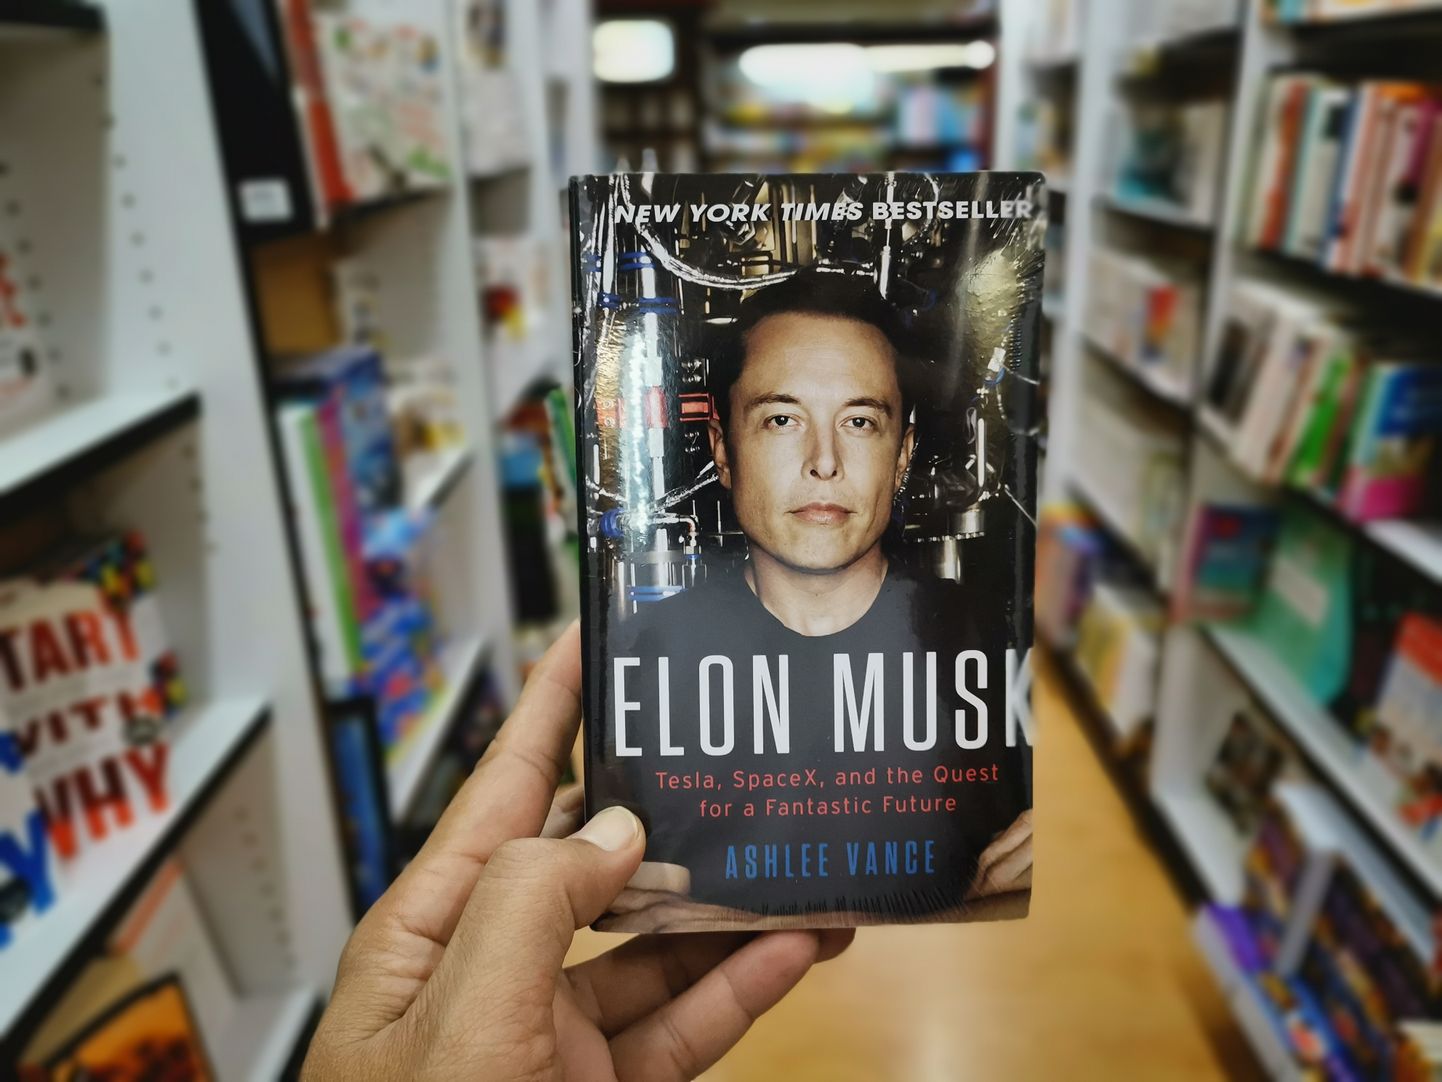 Pildil Ashlee Vance'i raamat "Elon Musk", mis ilmus 2015. aastal.